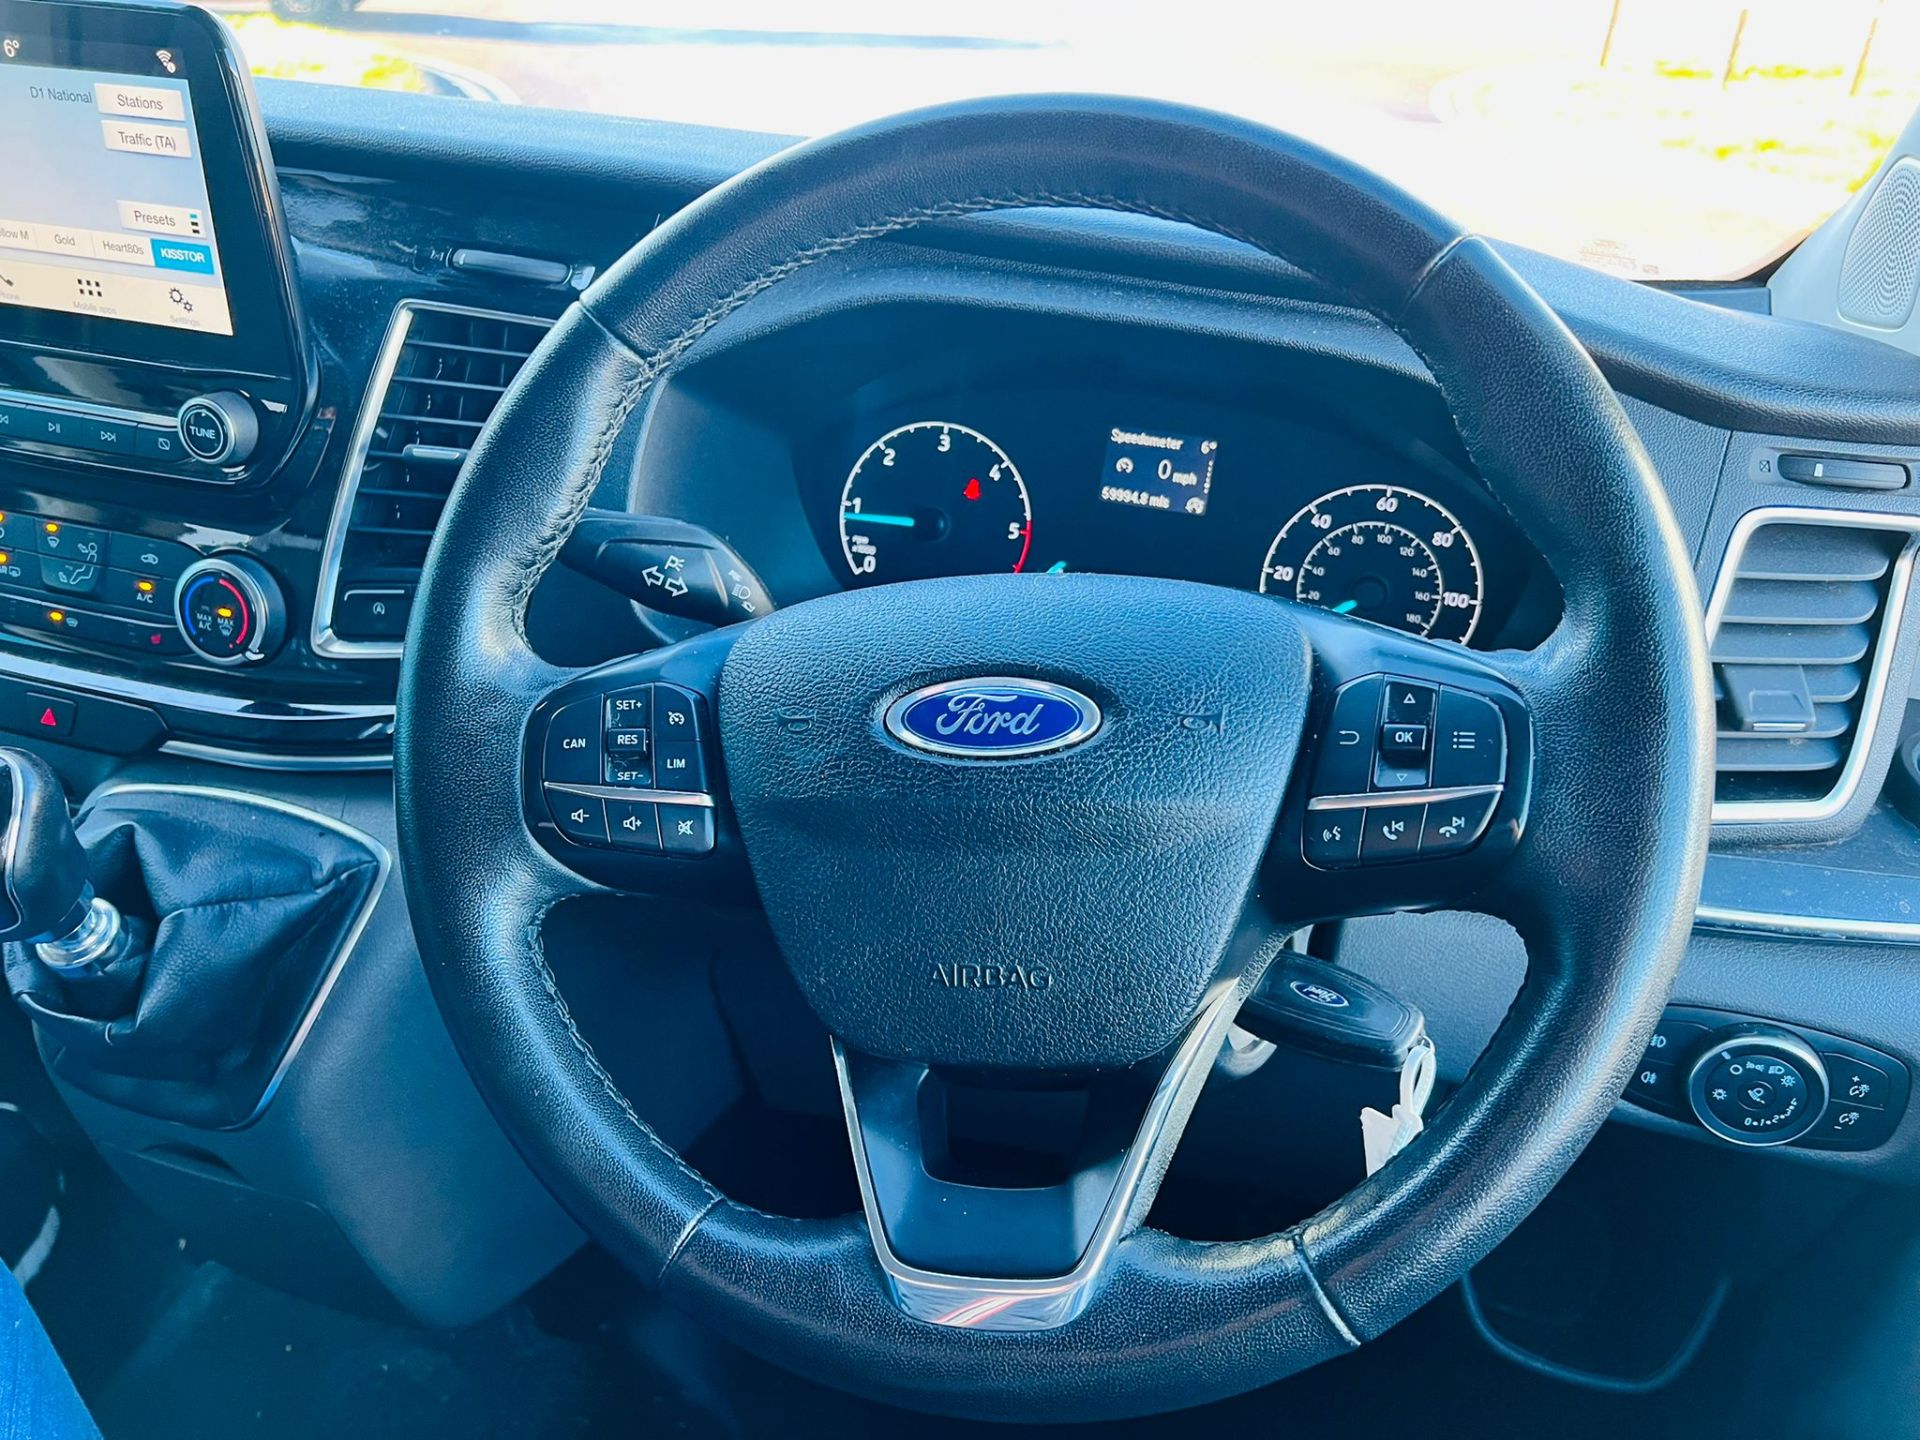 (Reserve Met) Ford Transit Custom 310 130 2.0 Tdci Titanium 9 Seater MiniBus 2019 Model - Air Con - - Image 33 of 36